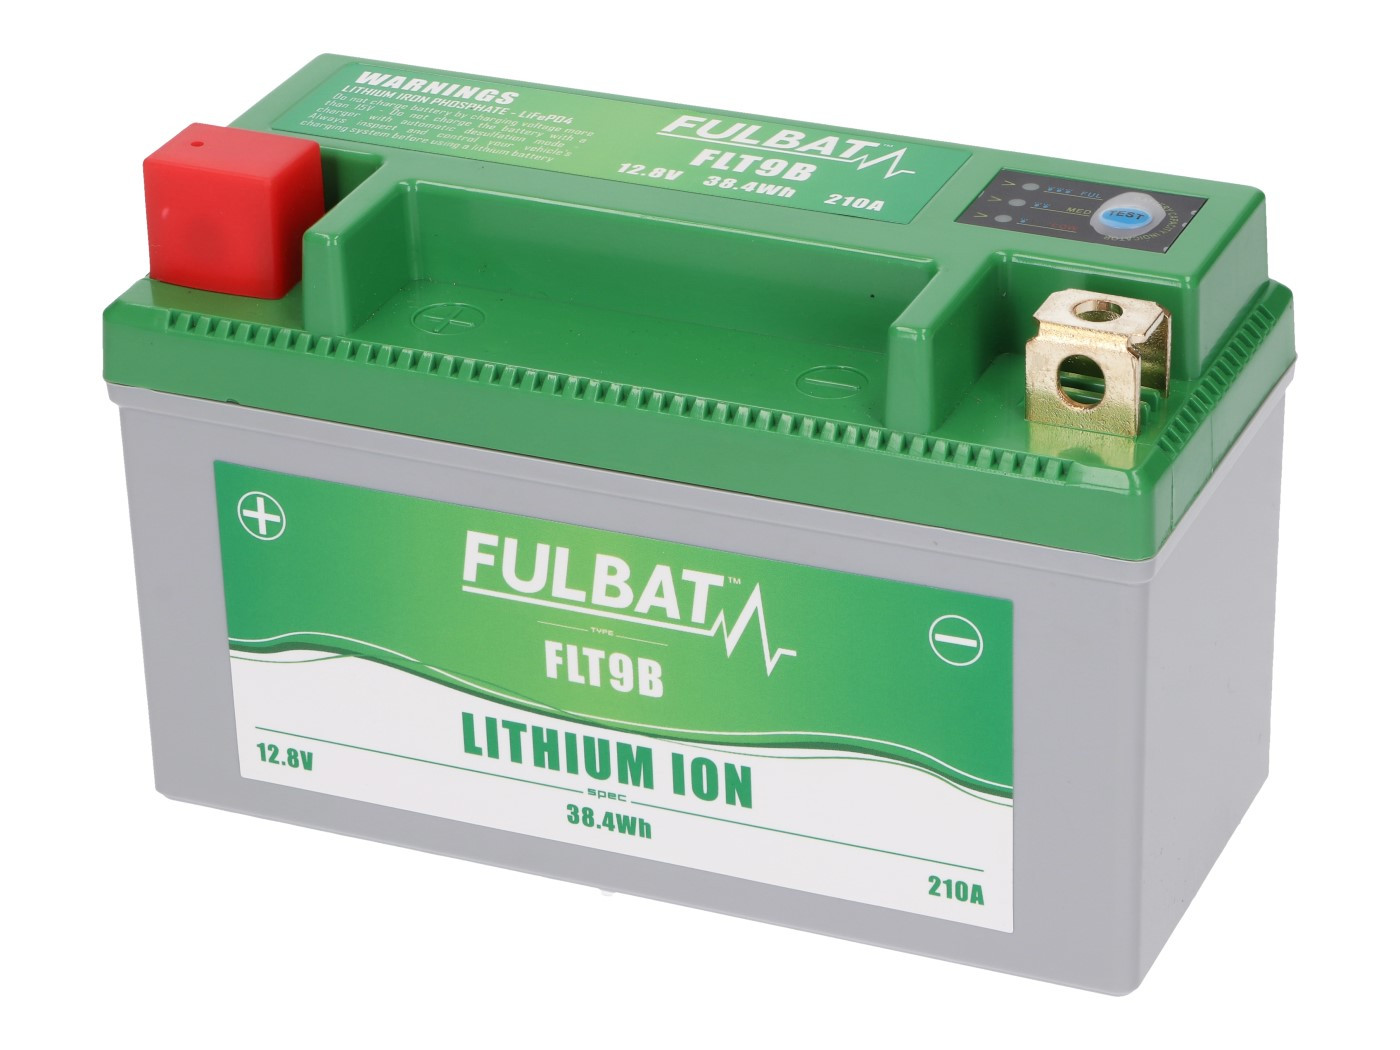 Fulbat FLT9B lítium-ion akkumulátor